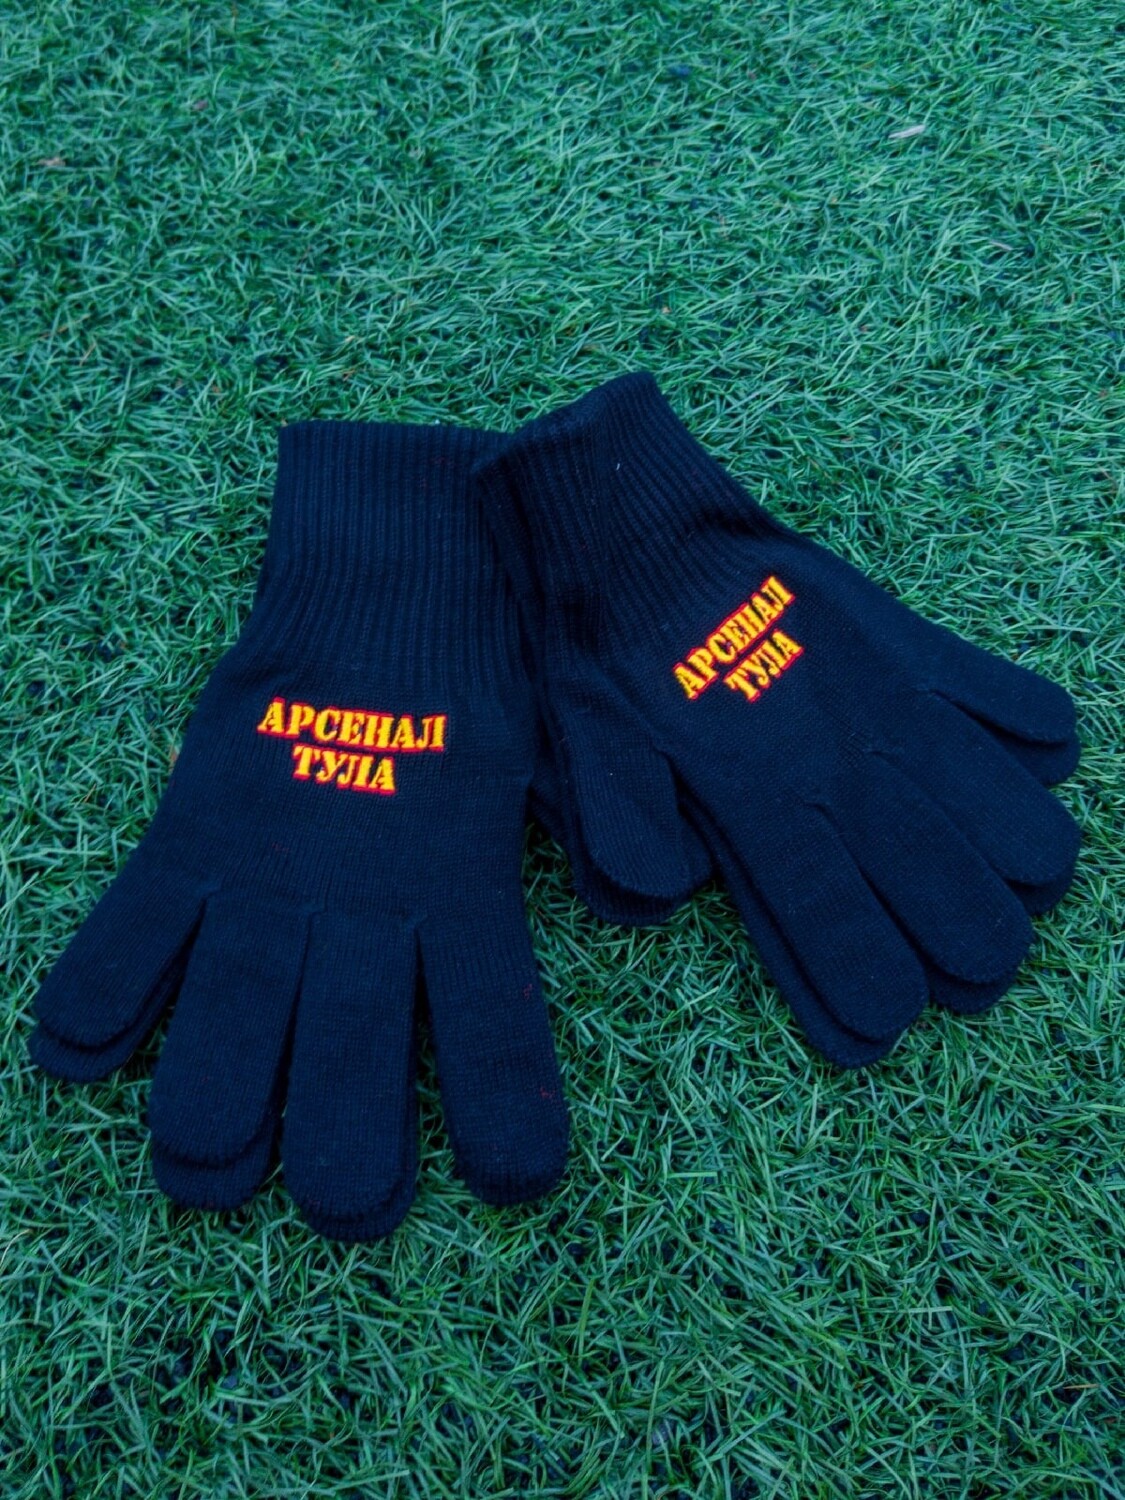 Вязанные перчатки с вышевкой "Арсенал - Тула"